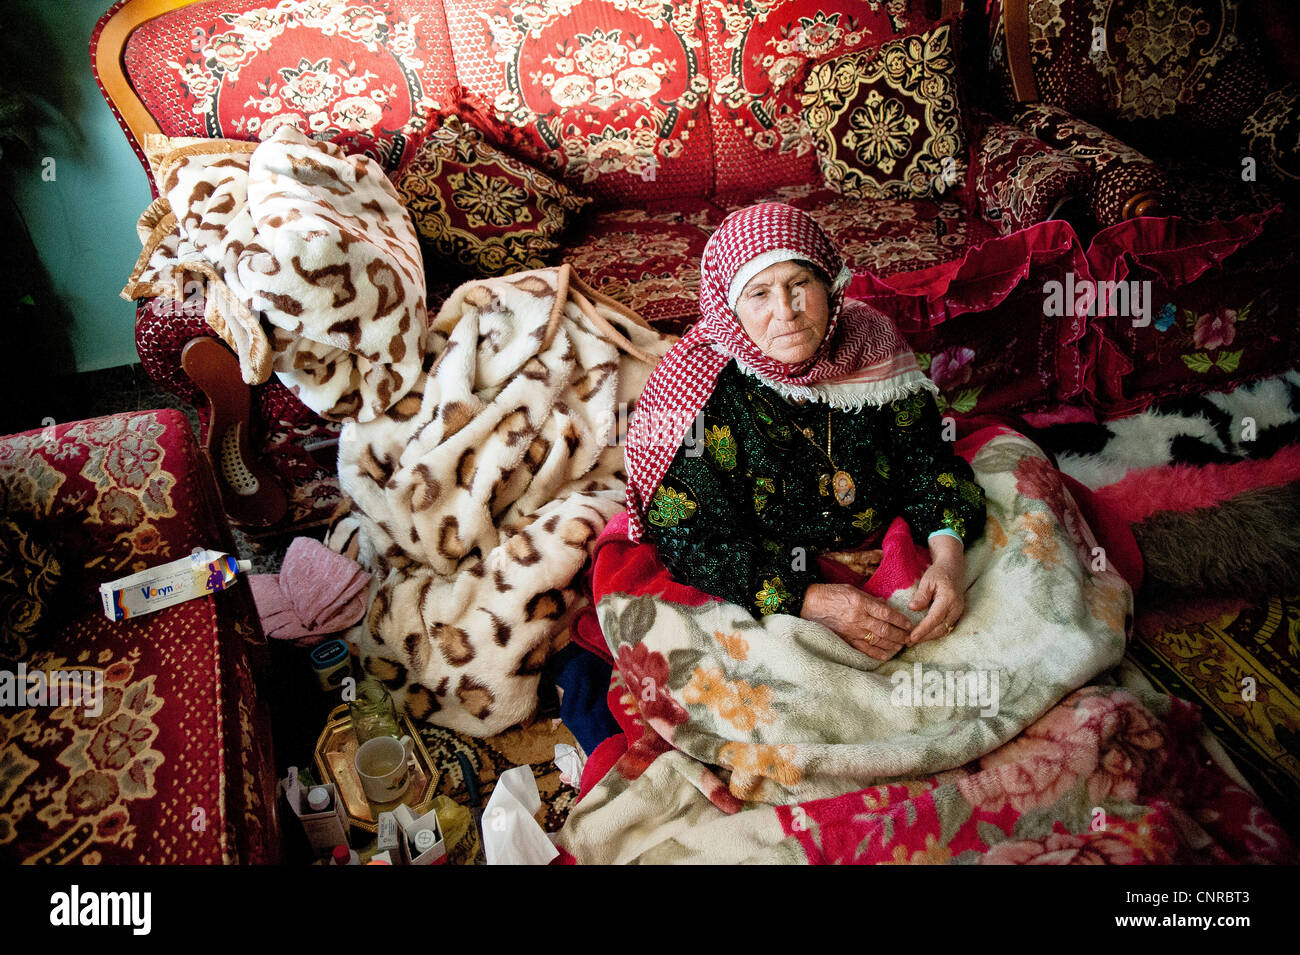 Die alte Dame von Awarta, wer nur mit ihren Fotos von Märtyrern, die alte Dame in ihrem Bett in der Mitte von rom schläft. Stockfoto